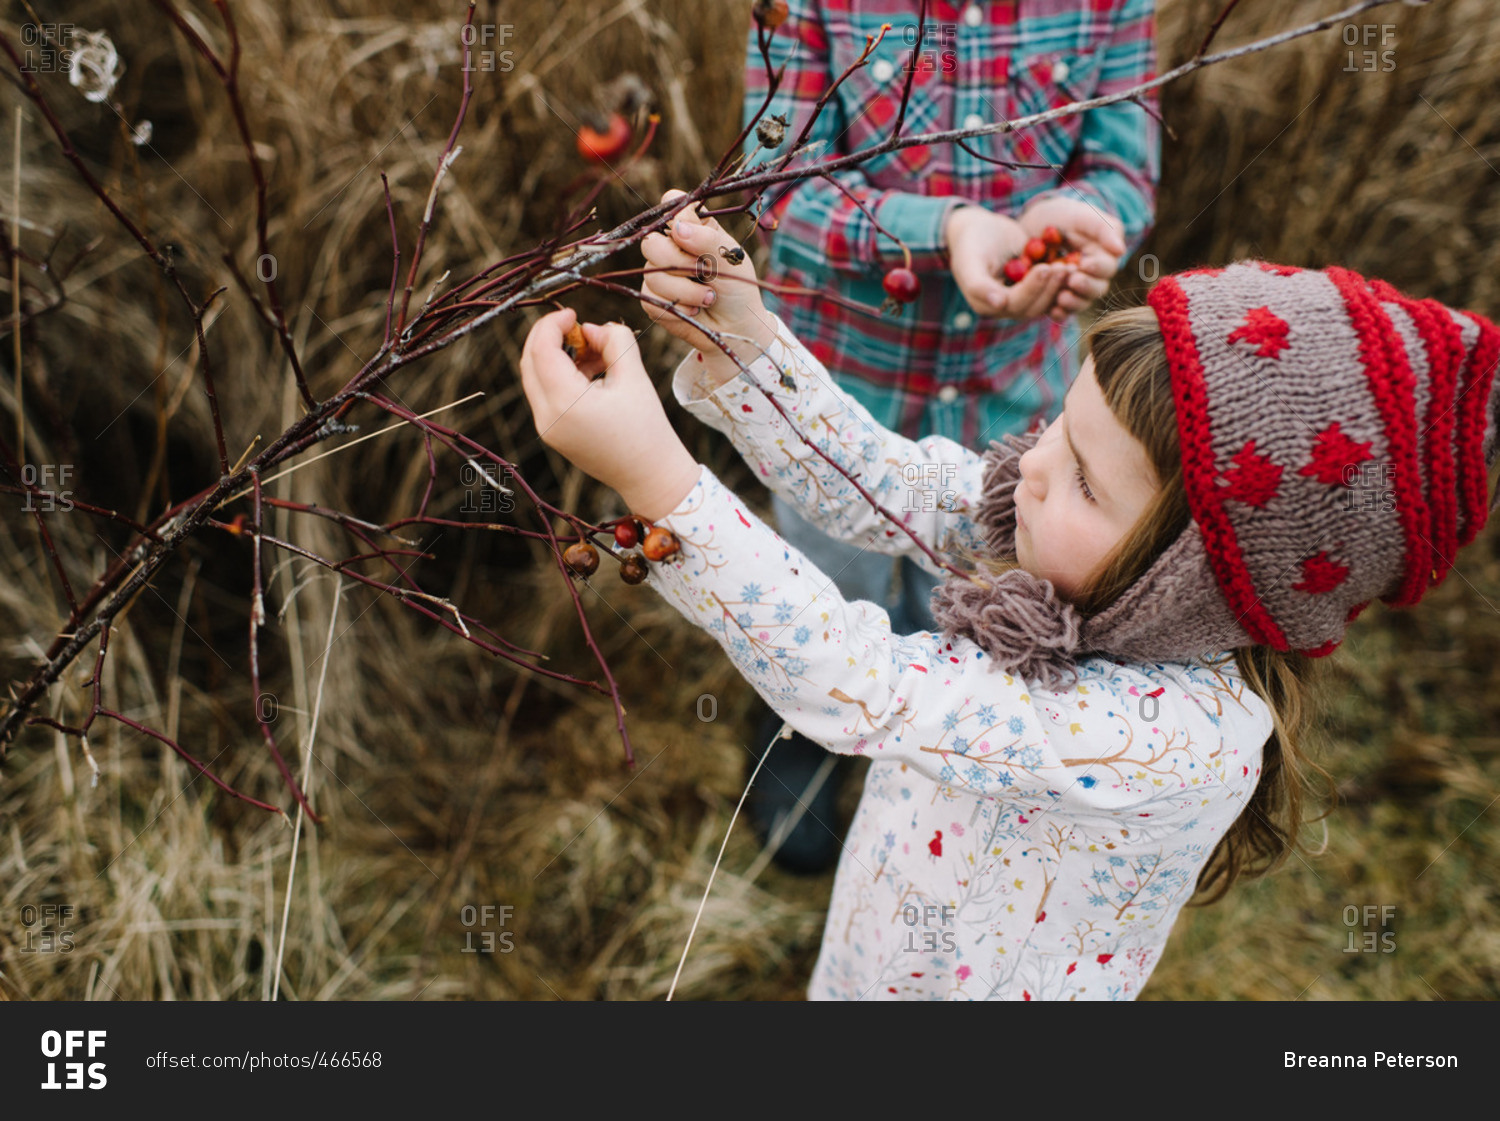 Children gathering wild rose hips together